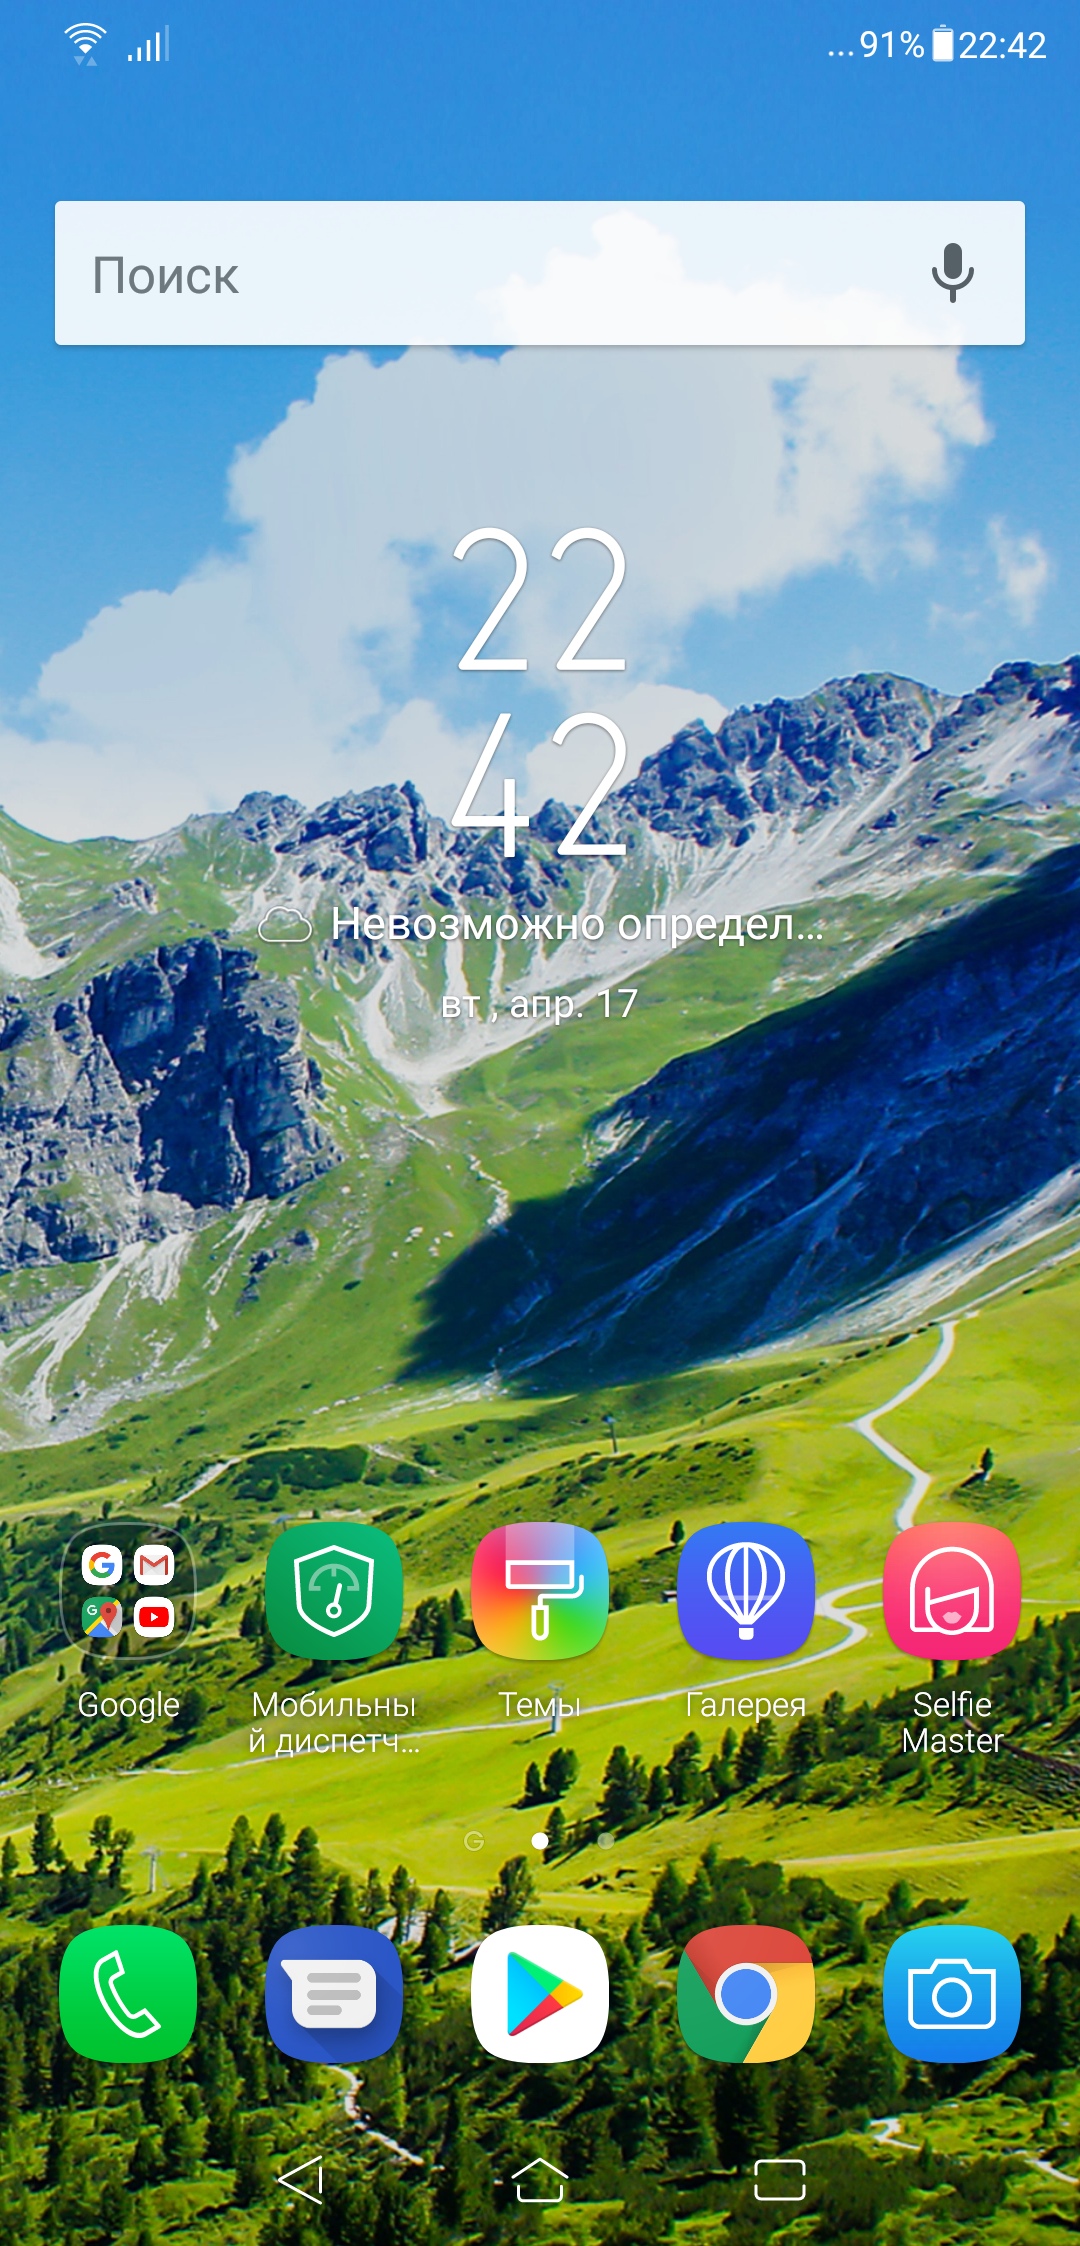 Обзор смартфона ASUS Zenfone 5 ZE620KL - 53